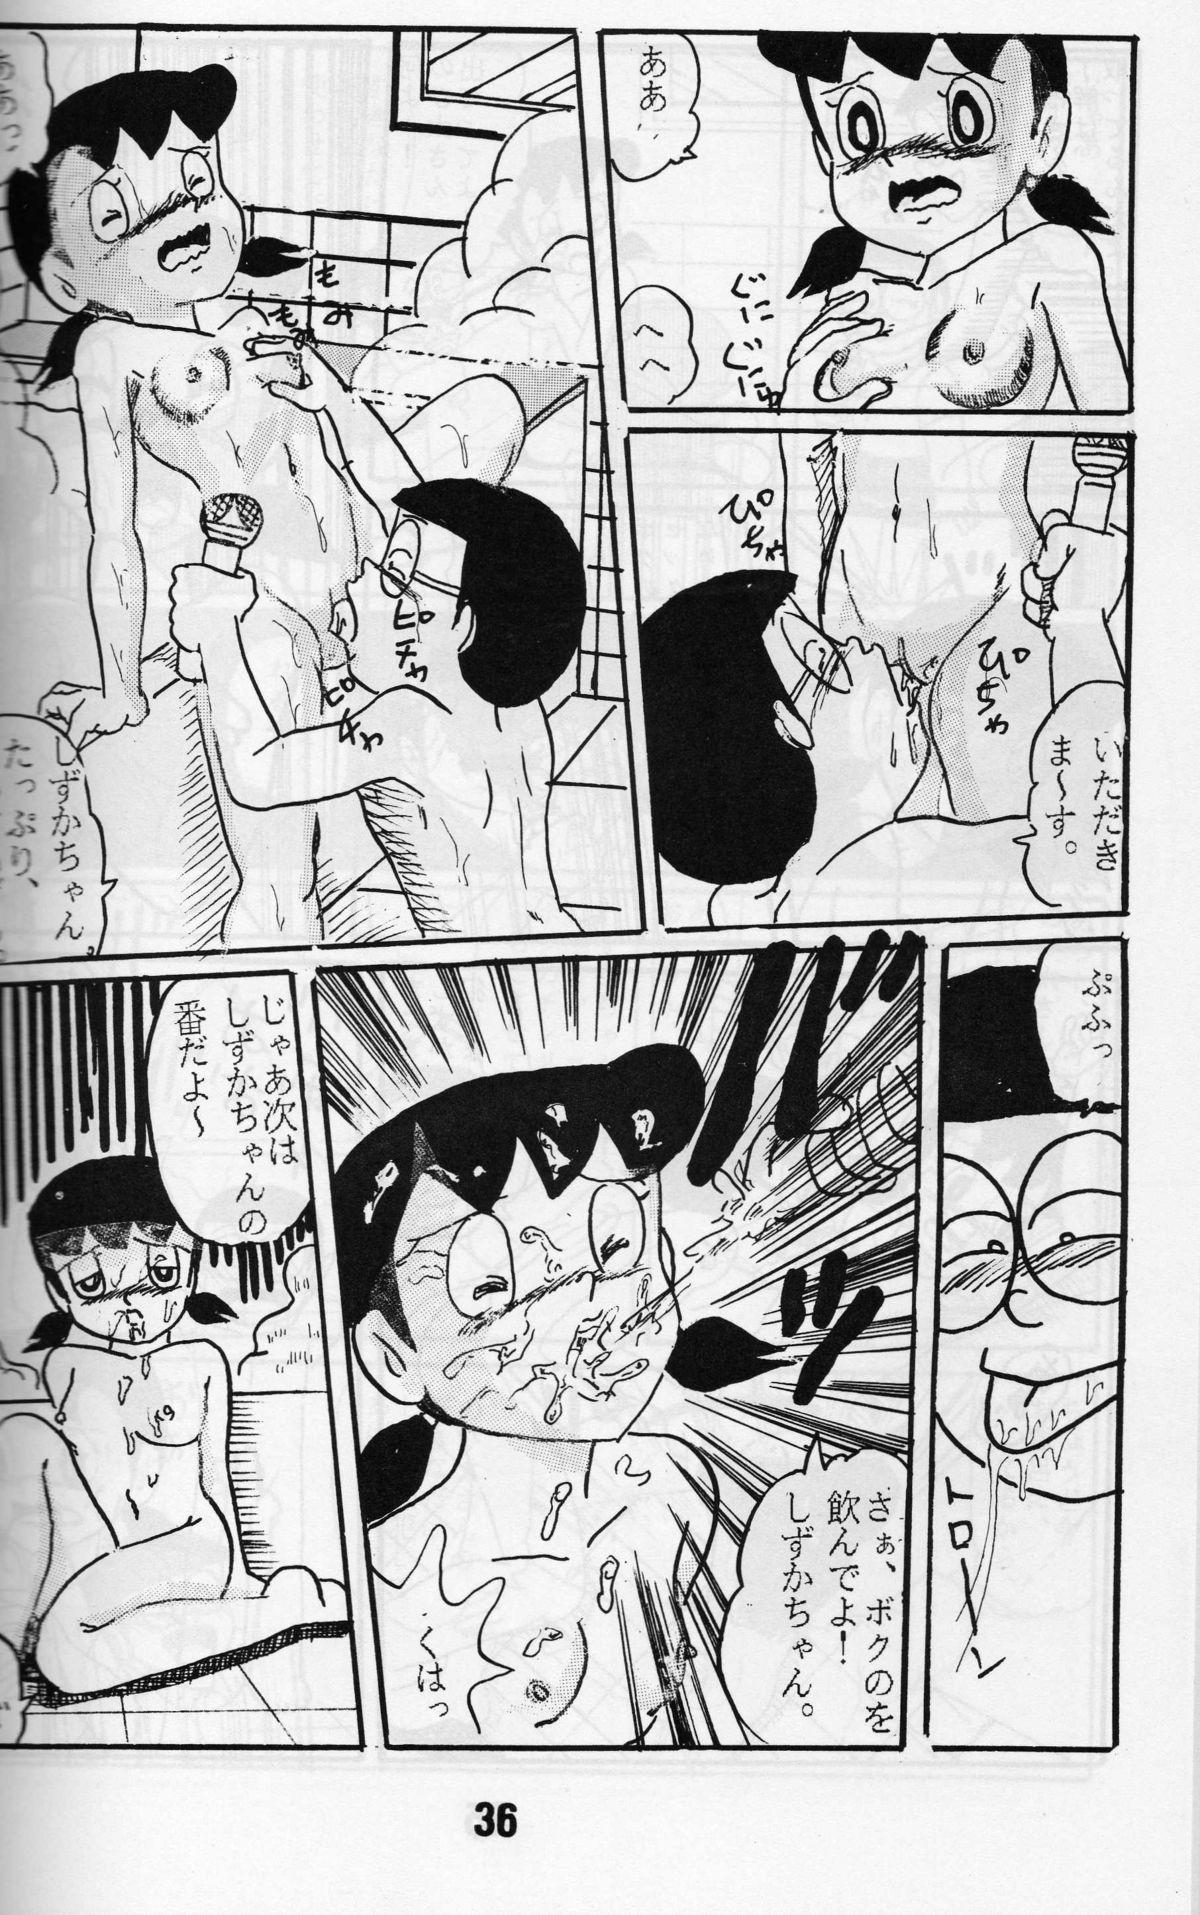 [ IZUMIYA (Teshigotoya Yoshibee, Sen fuji kaiko) ] FLASH BACK 2 (Doraemon) page 35 full